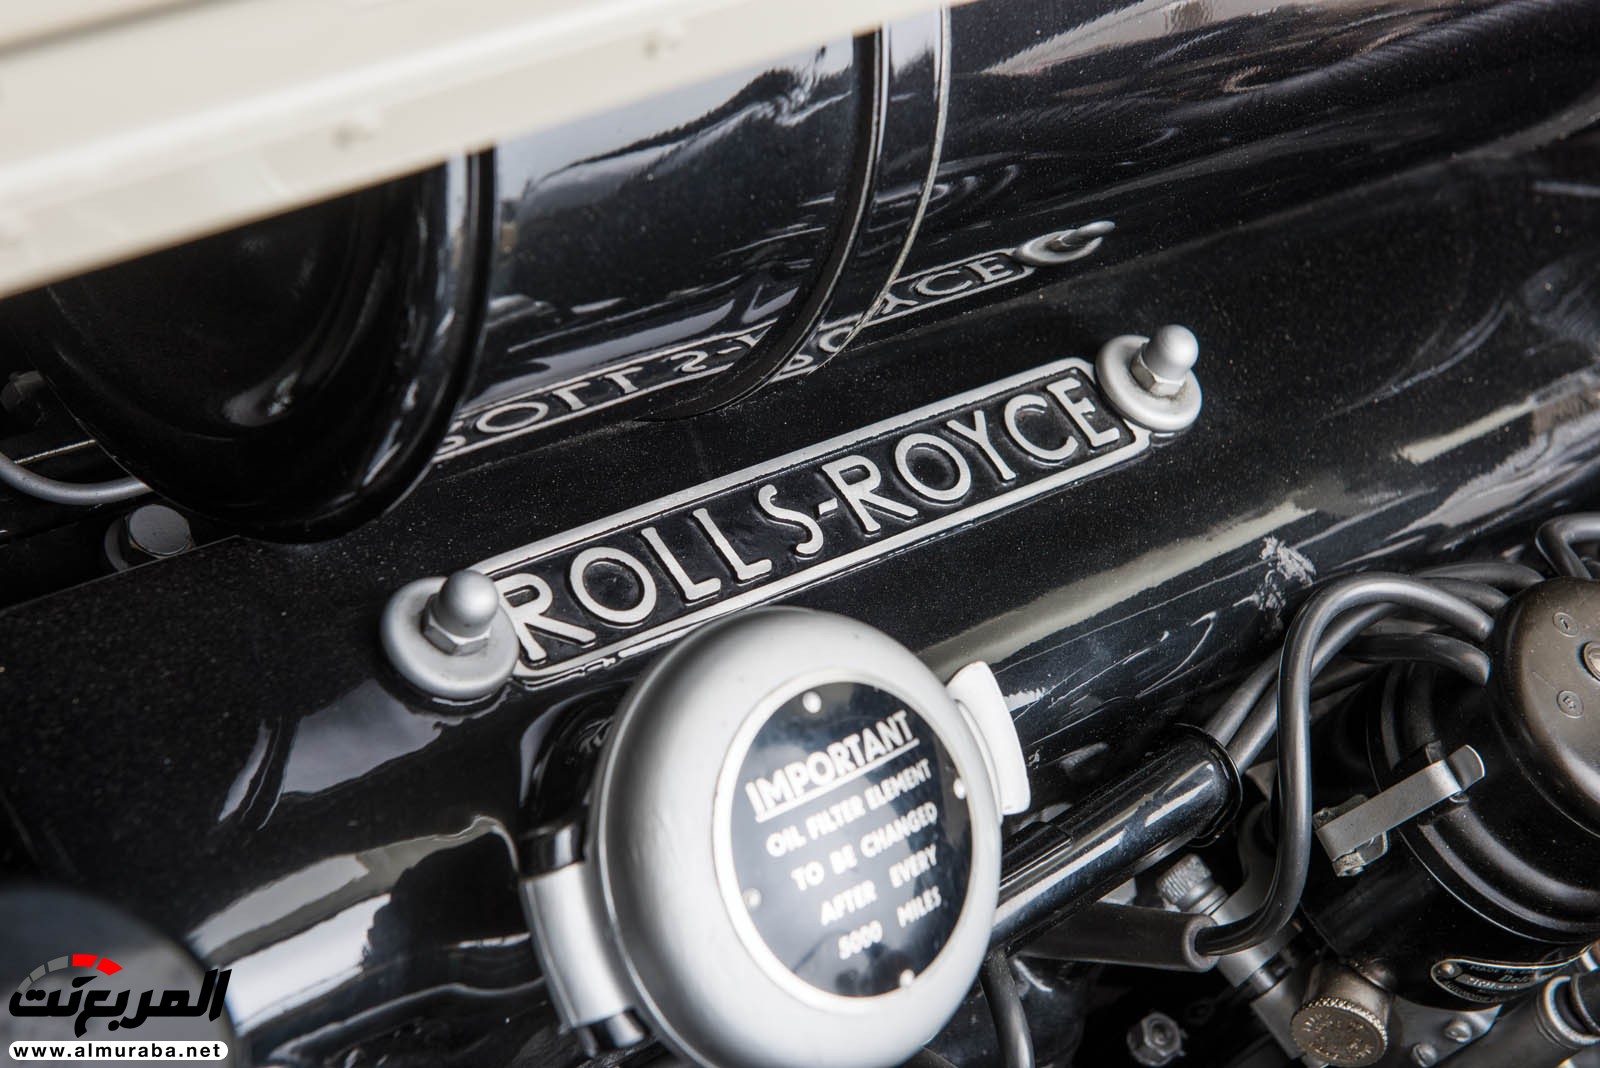 "رولز رويس" سيلفر كلاود 1959 ذات هيكلة الواجن تتوجه لتباع في مزاد عالمي Rolls-Royce Silver Cloud 87